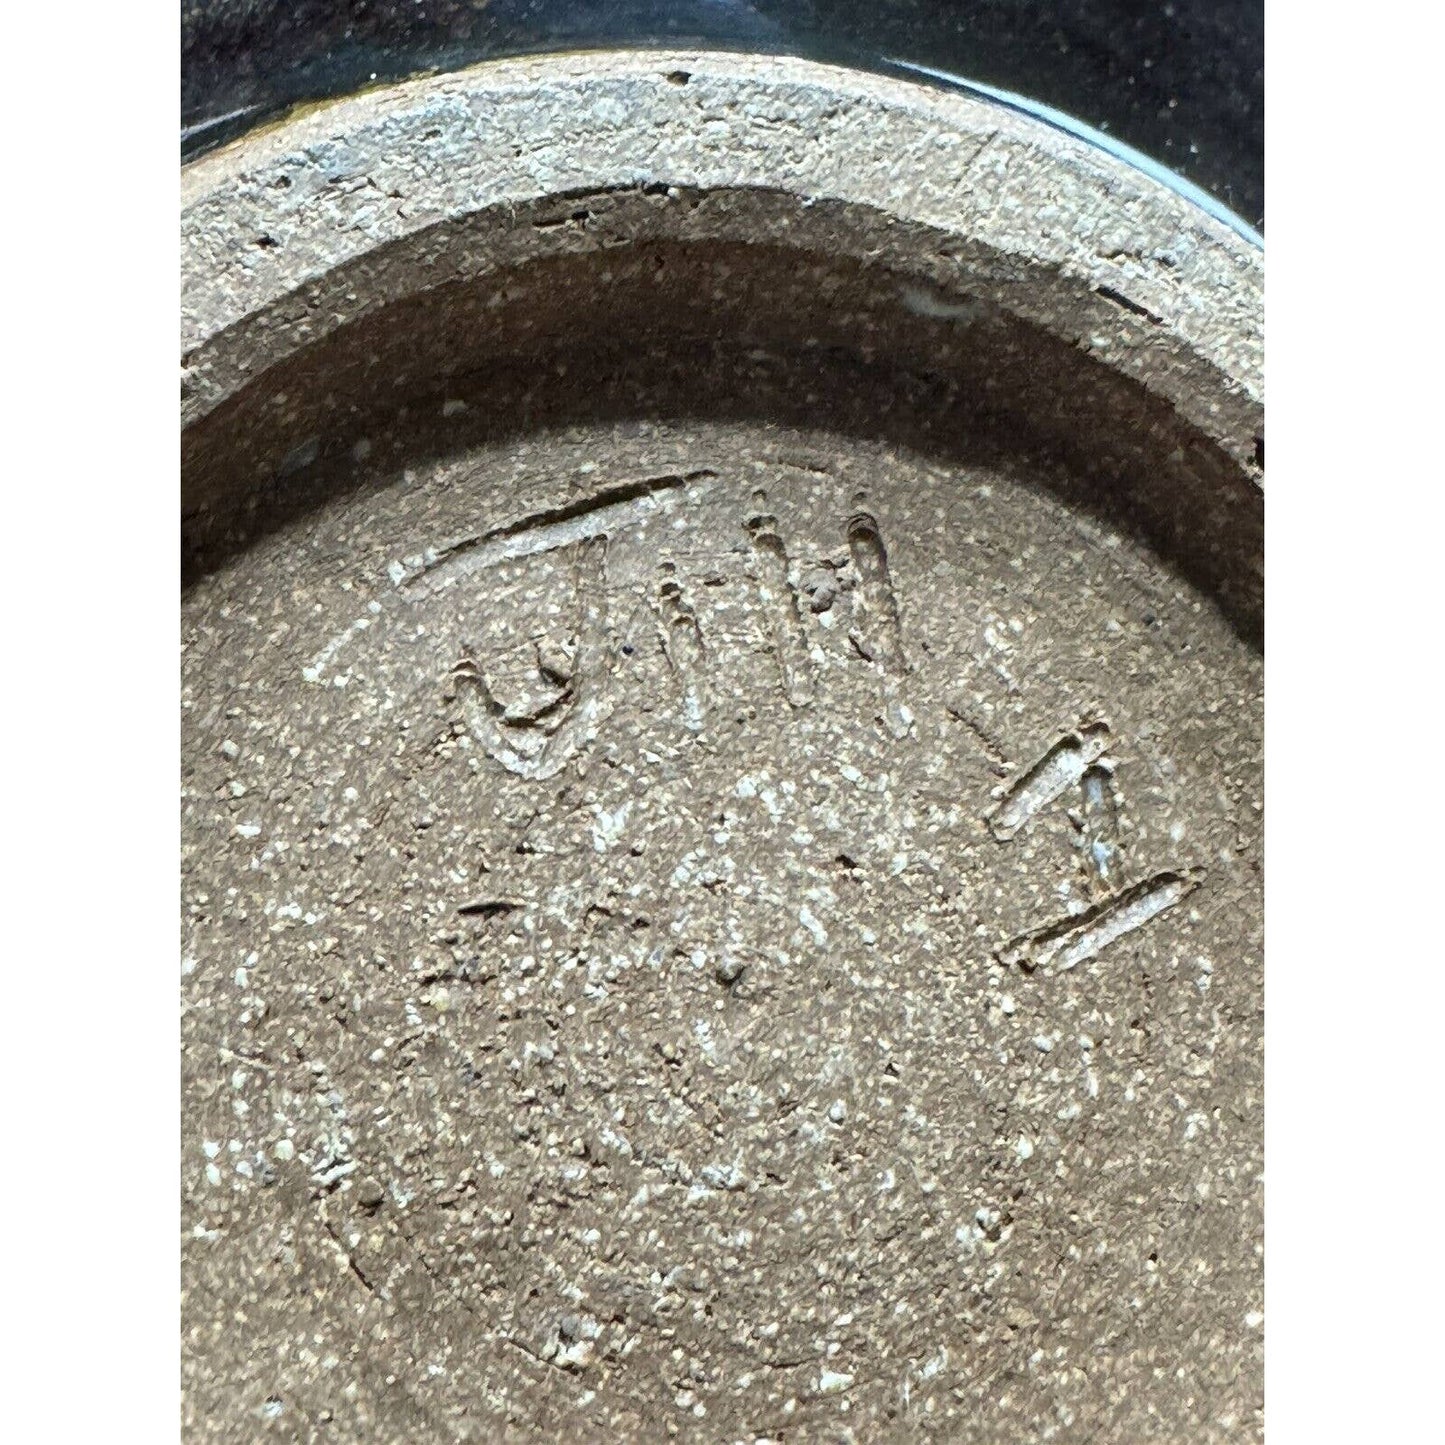 HandcraftedVintage Drip Glazed OOAK Art Pottery Tamadon 8” Ramen Bowl - Signed - Black Dog Vintage